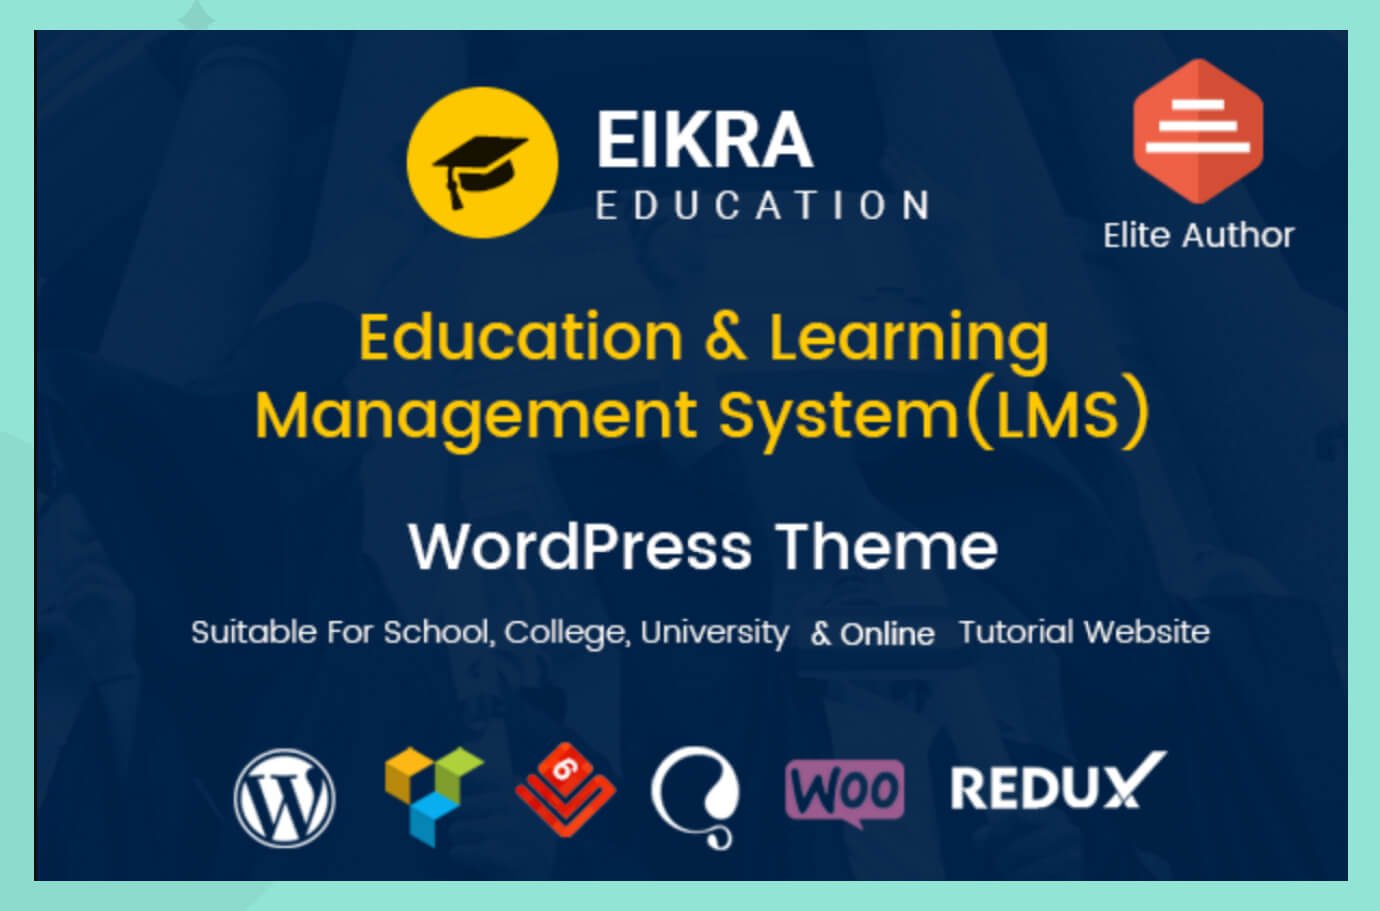 An image of Eikra Education WordPress Theme